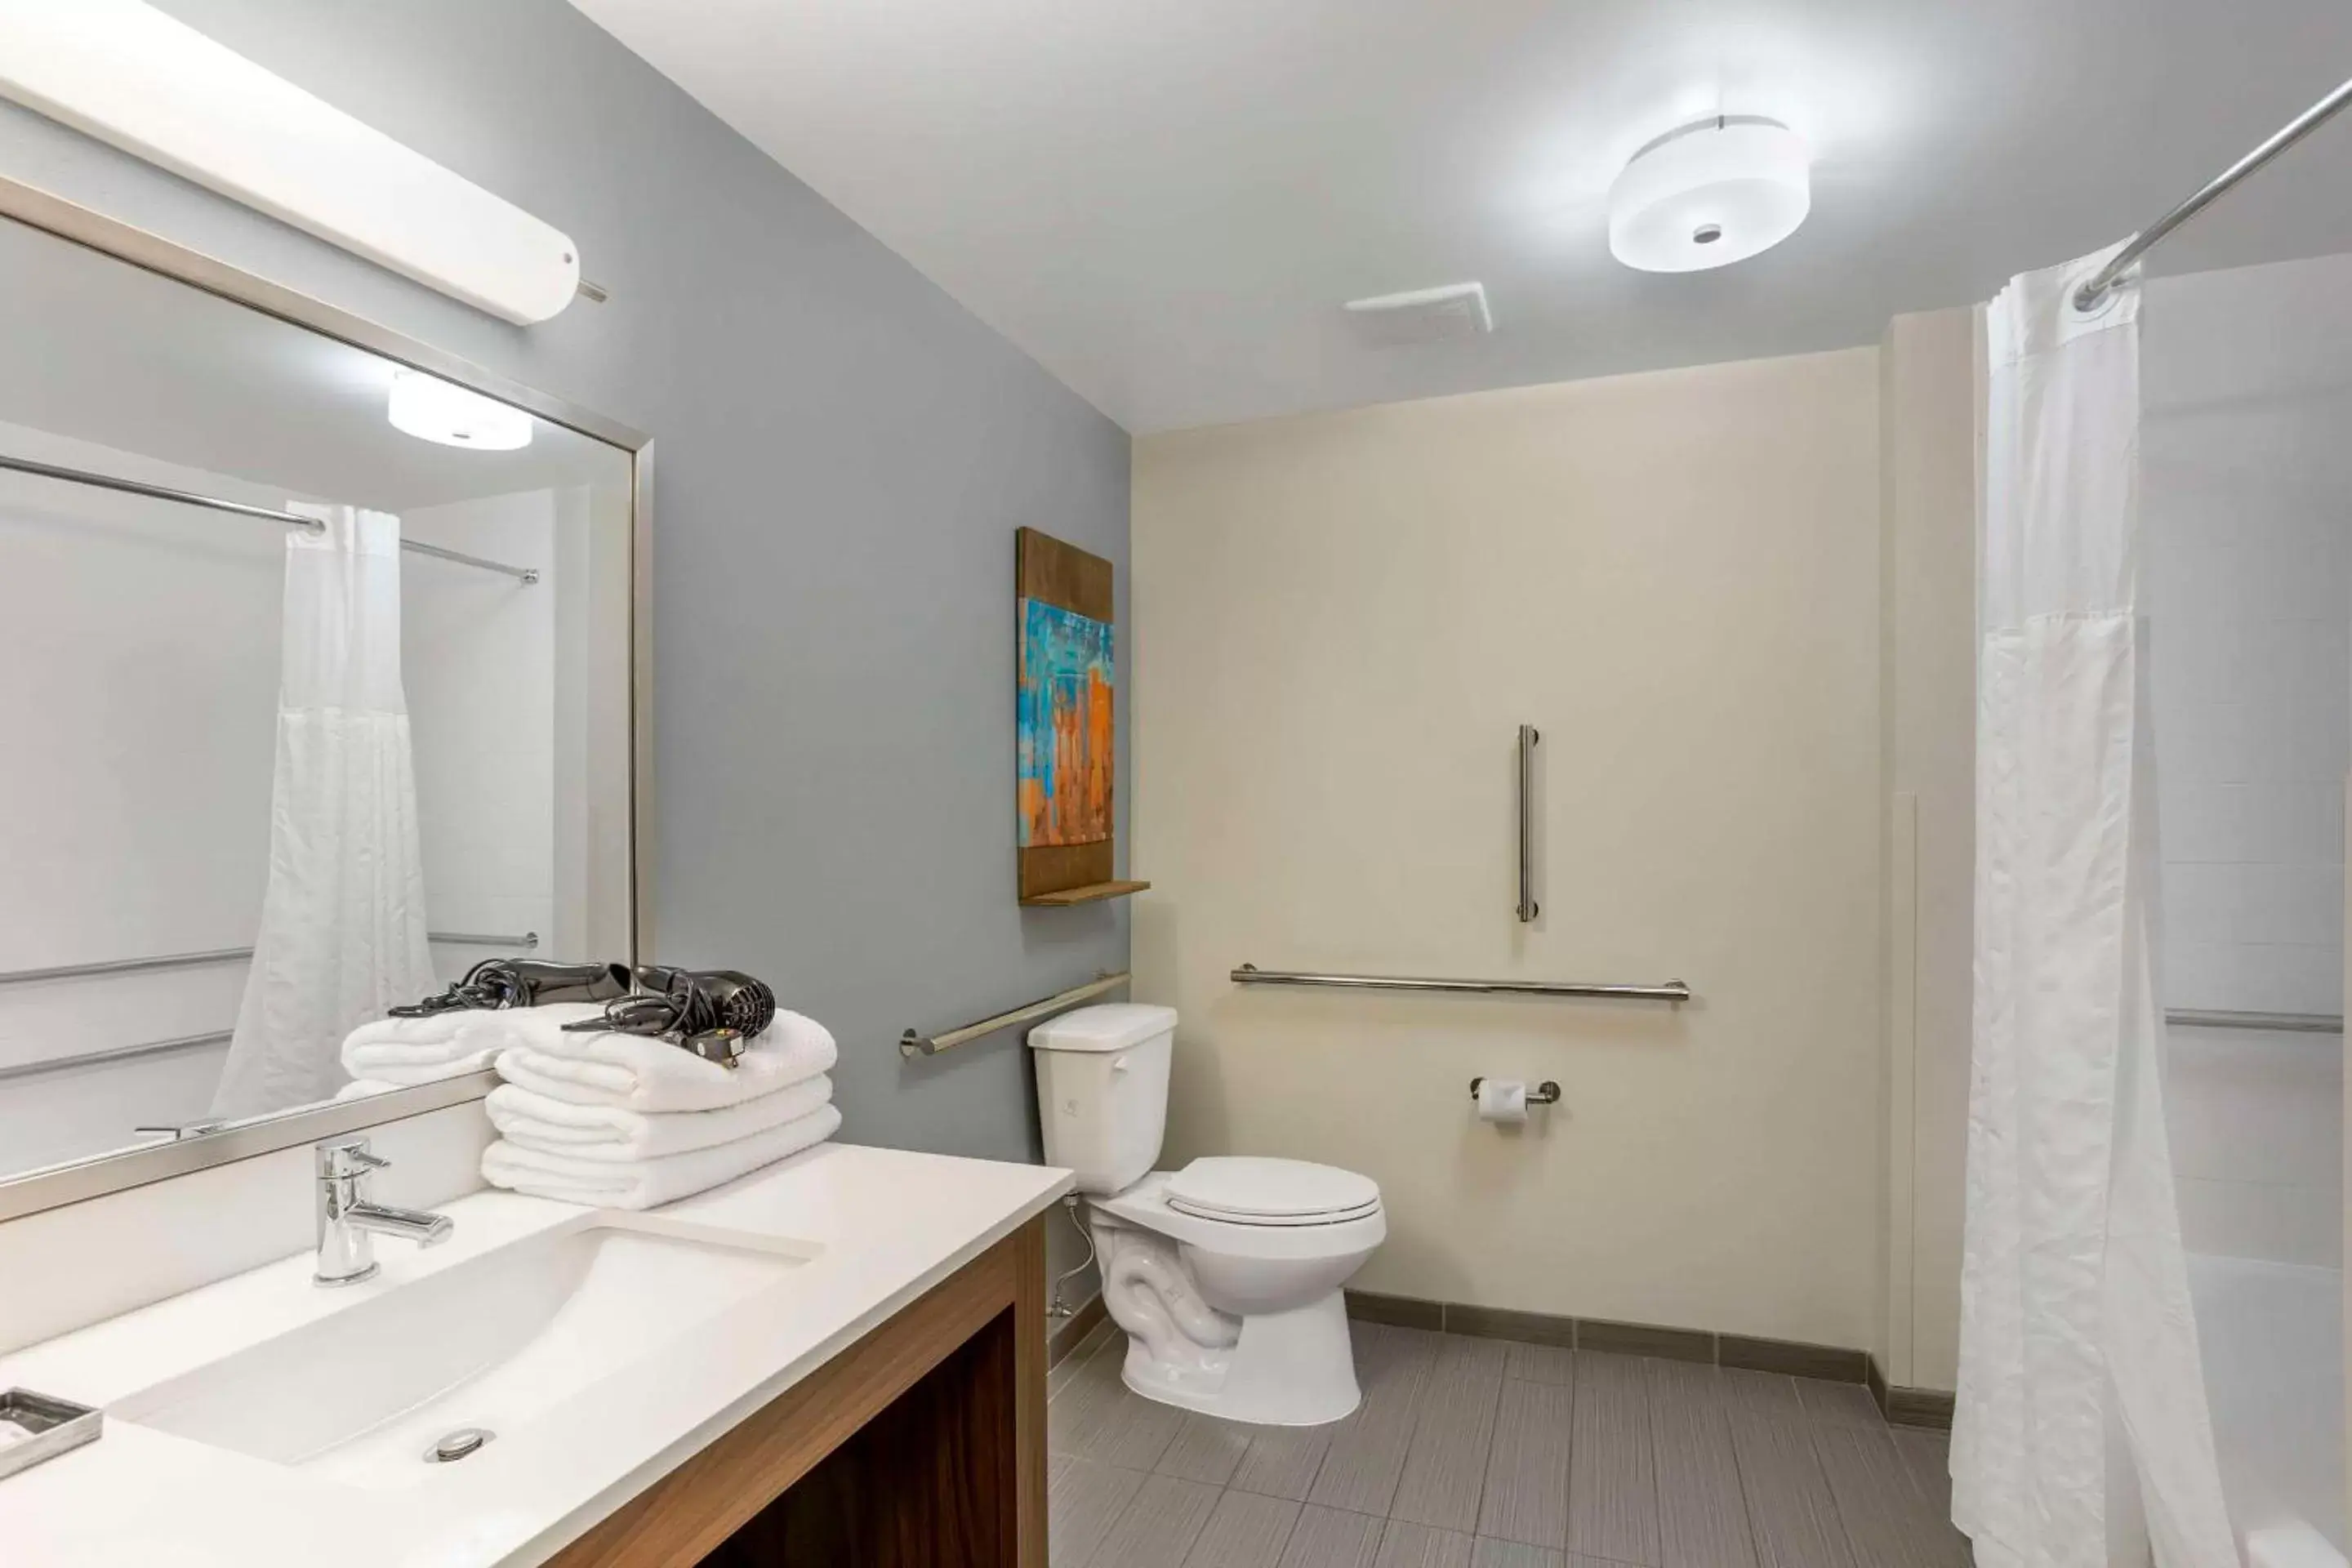 Bedroom, Bathroom in MainStay Suites North - Central York